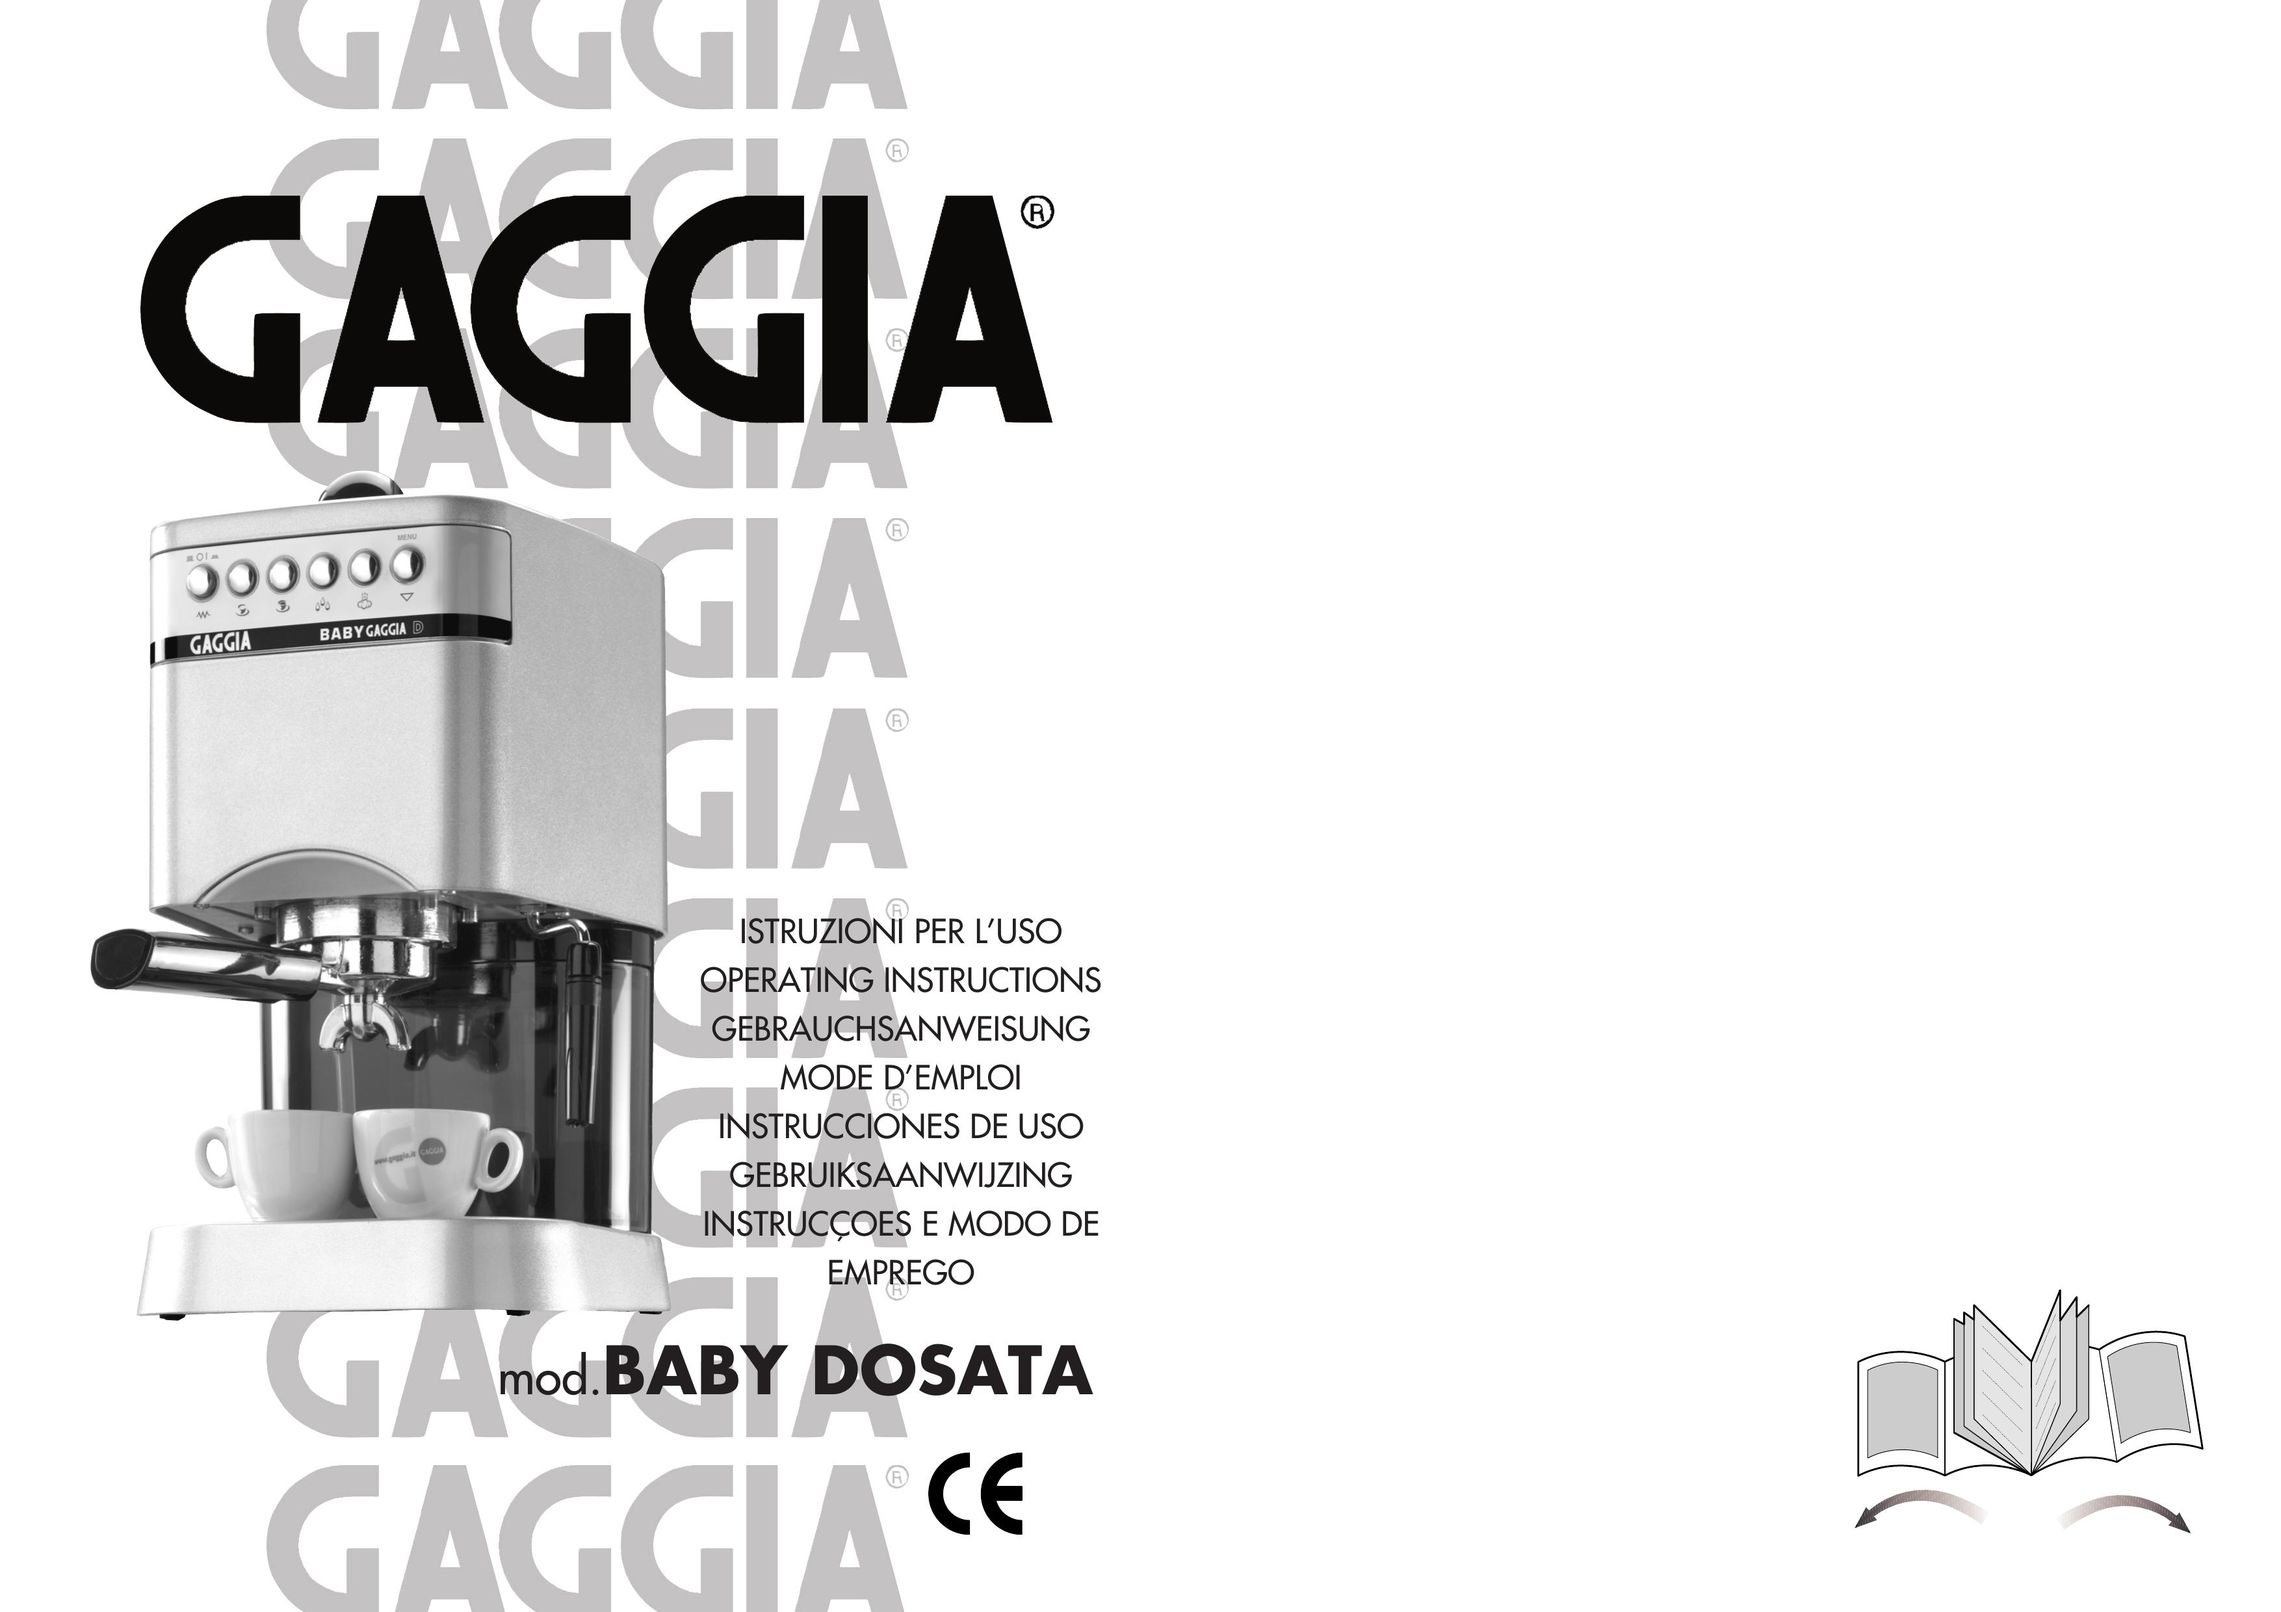 Gaggia Machine Baby Dosata Espresso Maker User Manual